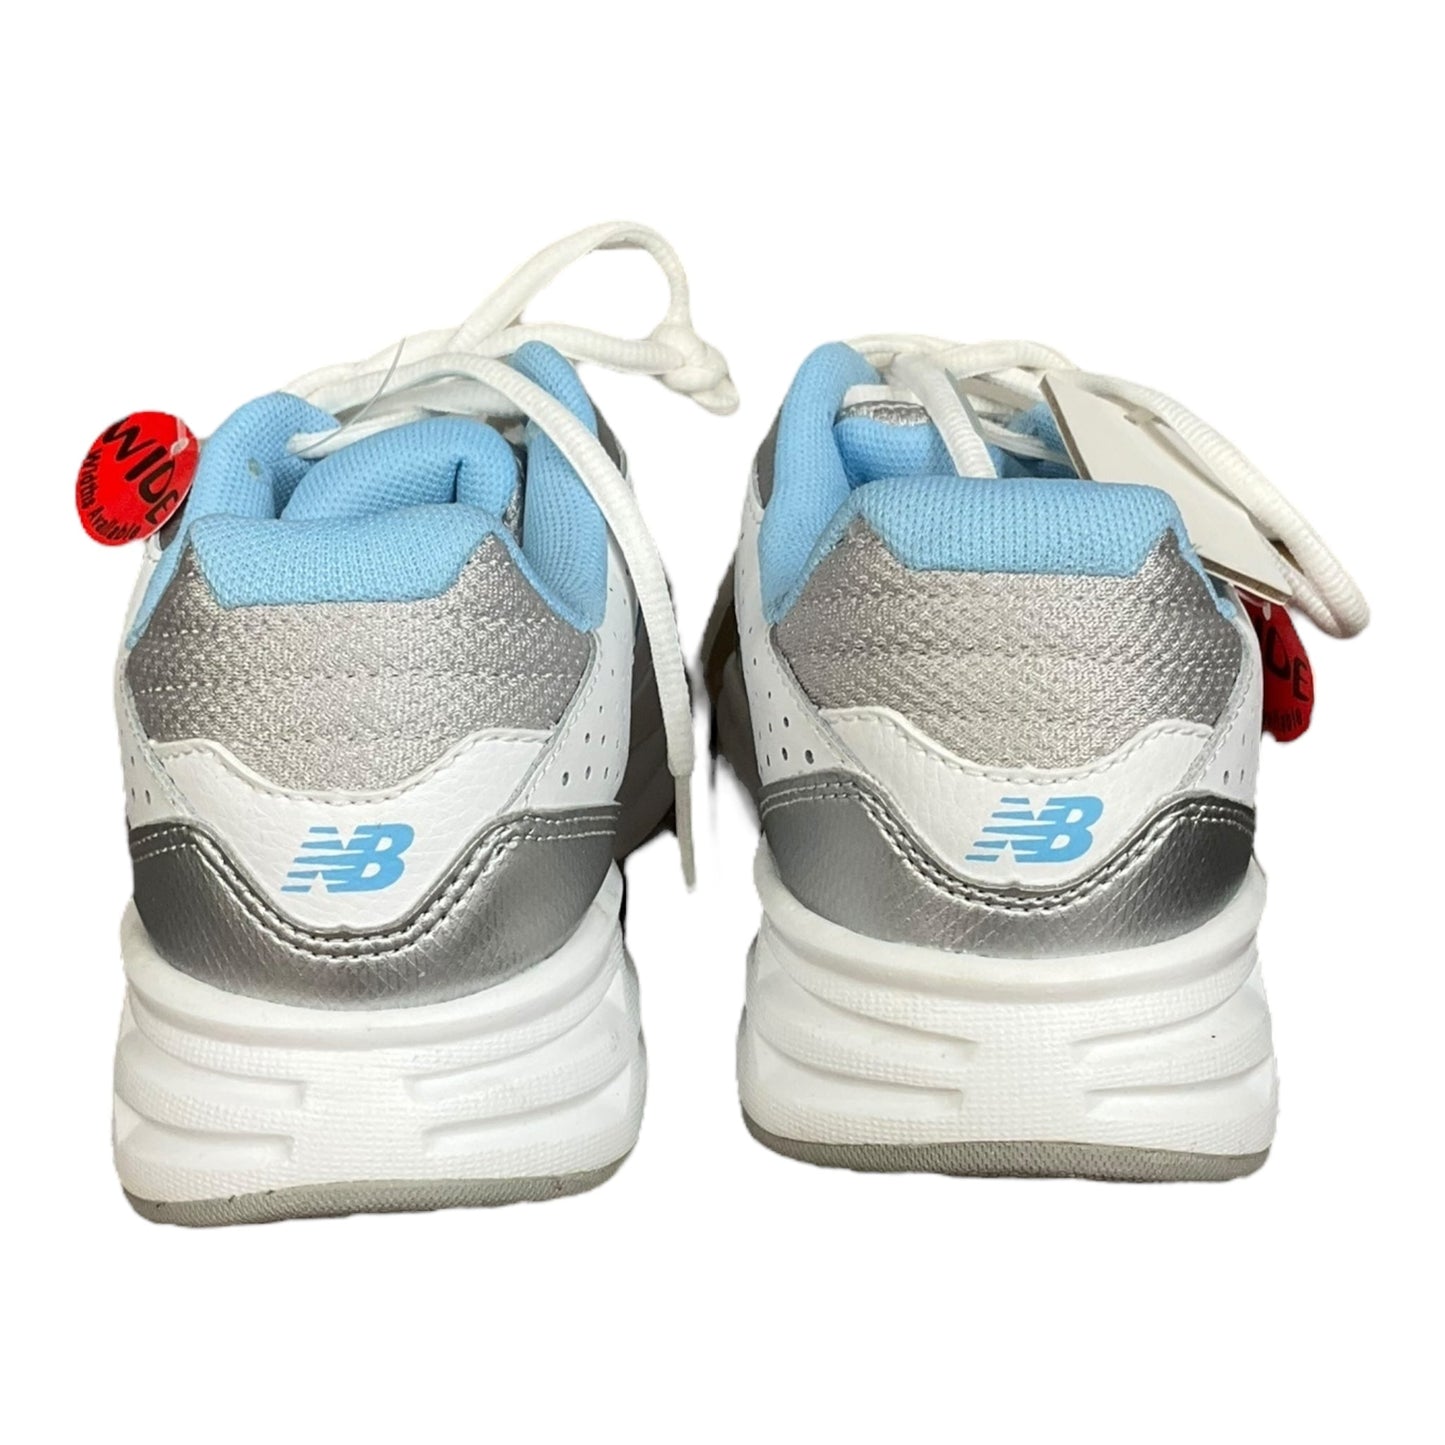 Blue & White Shoes Athletic New Balance, Size 9